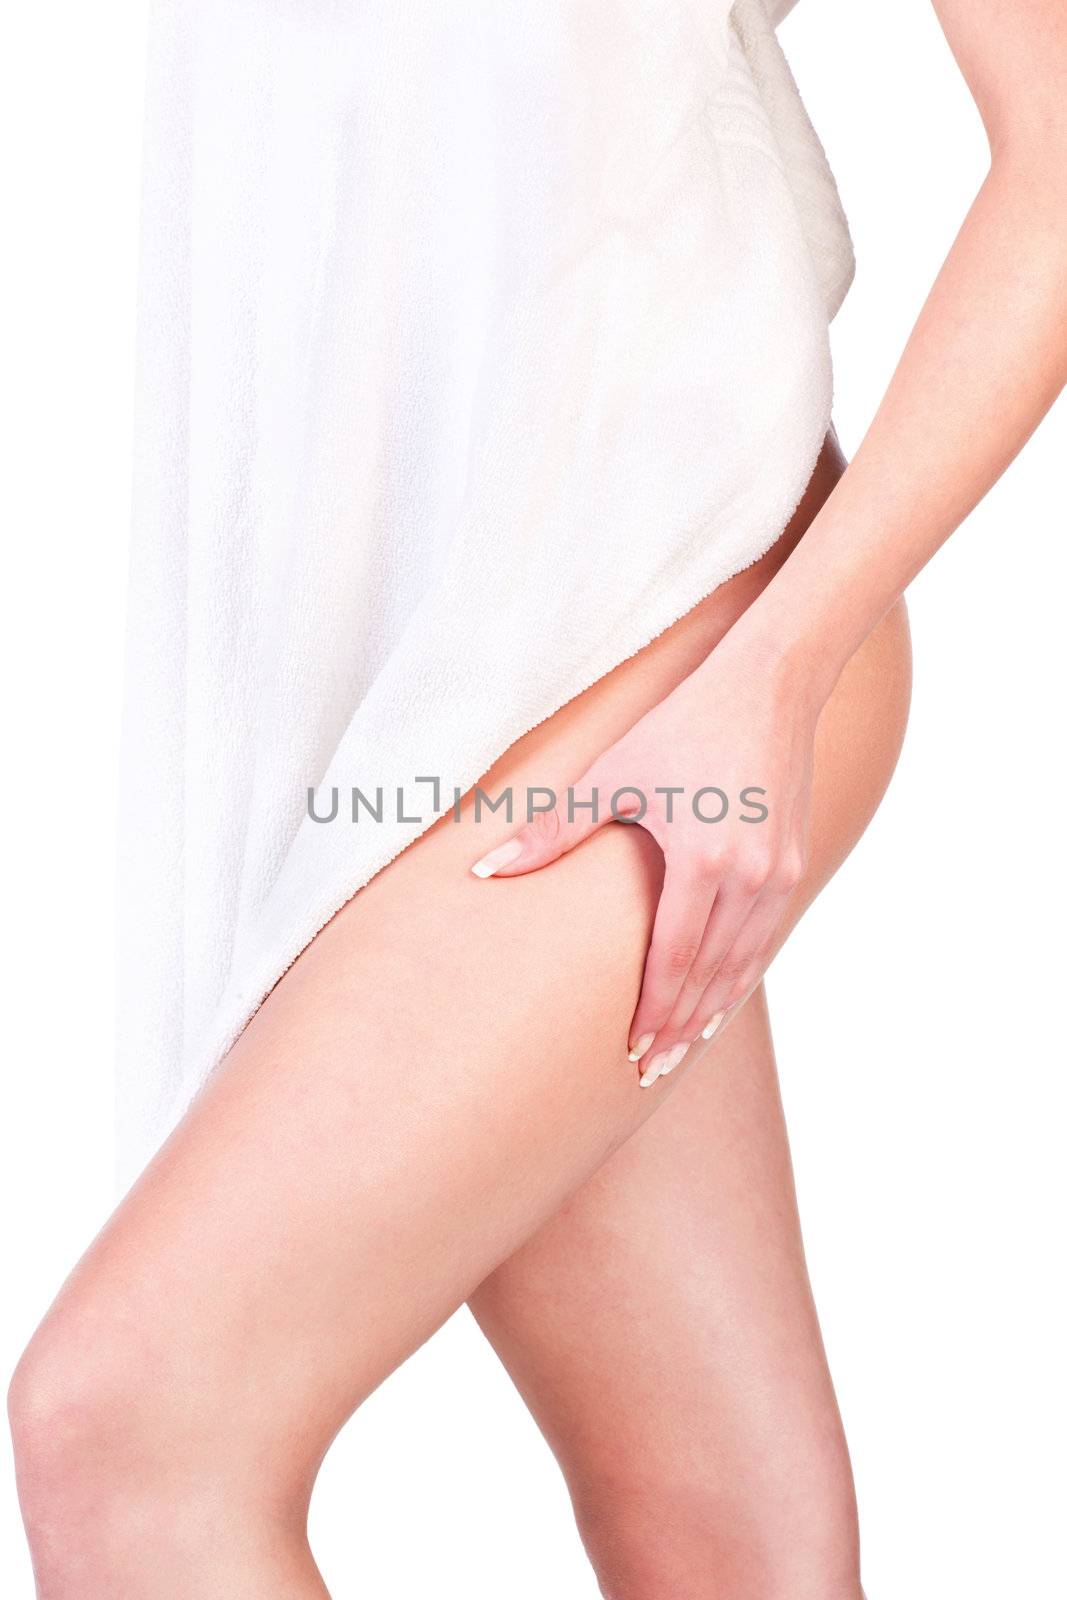 pinching leg for skin fold test by imarin